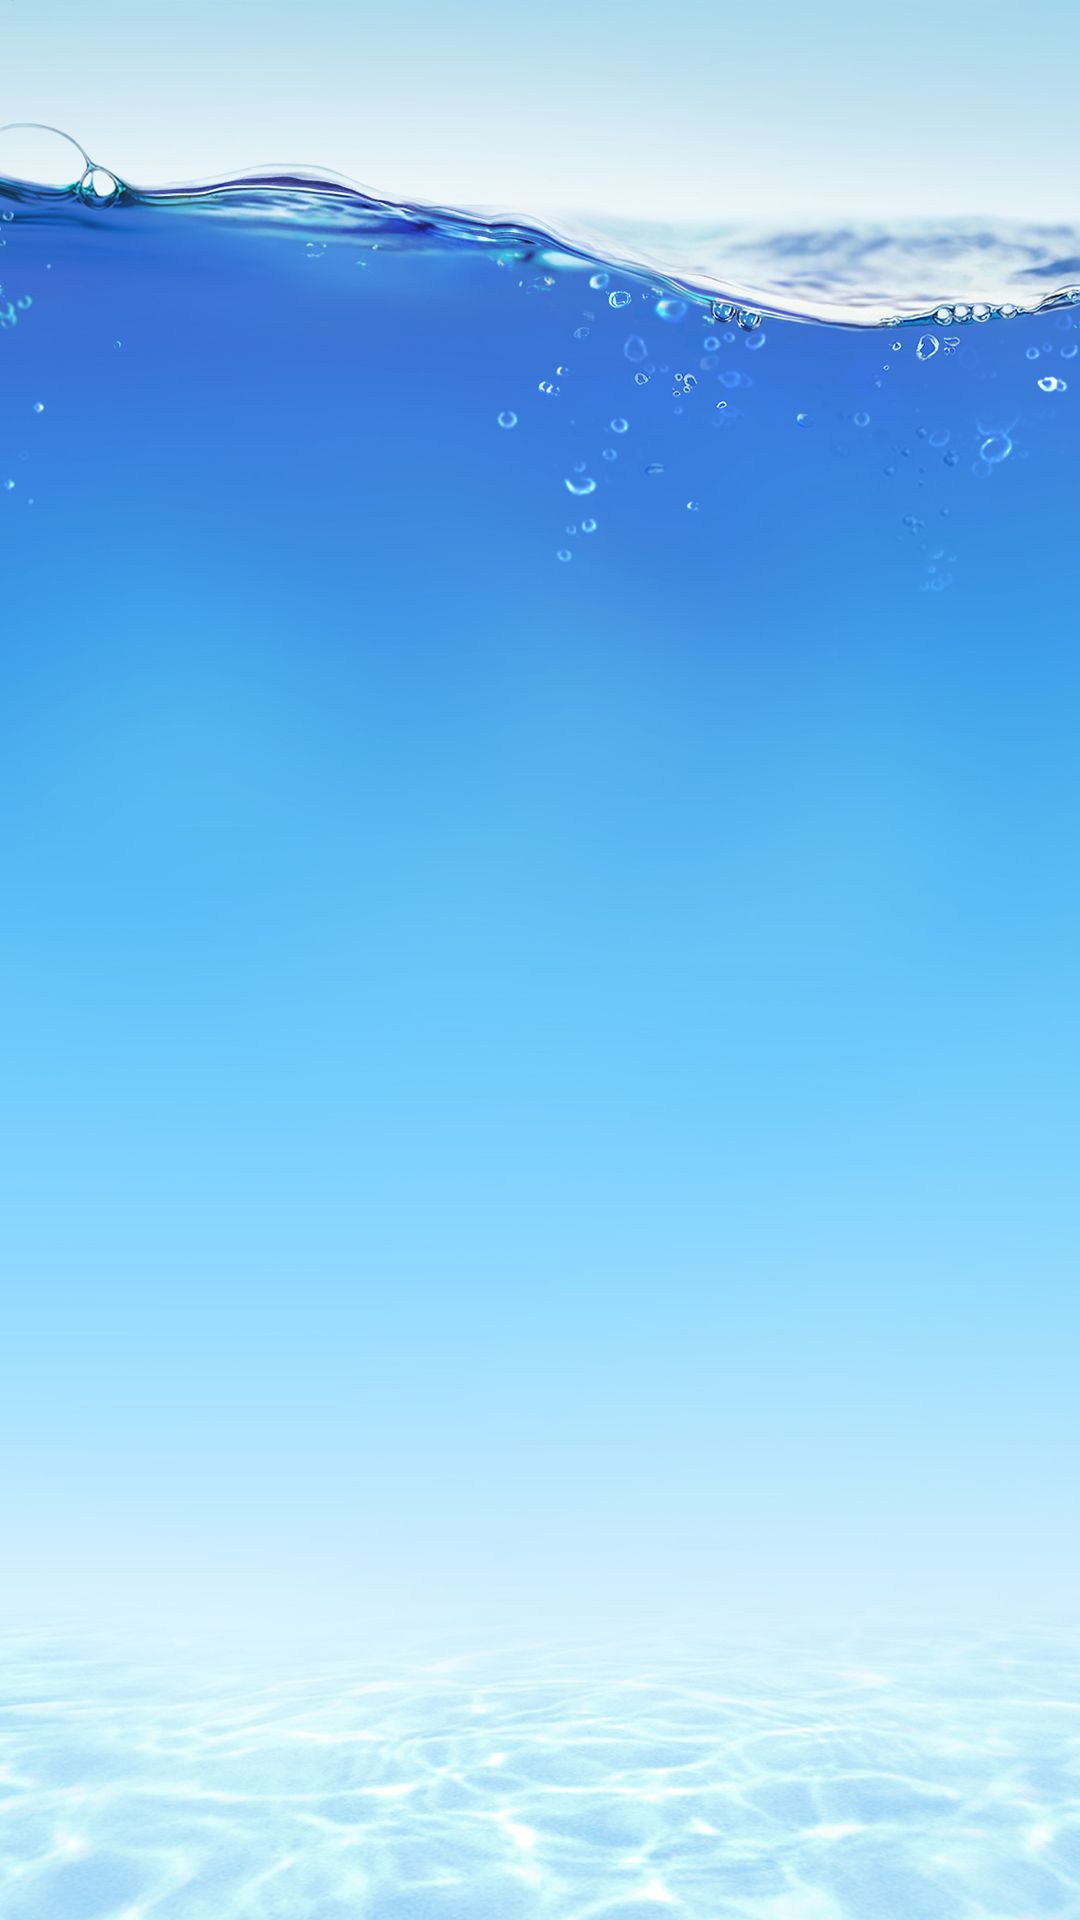 carta da parati ad acqua hd iphone,cielo,blu,giorno,acqua,atmosfera